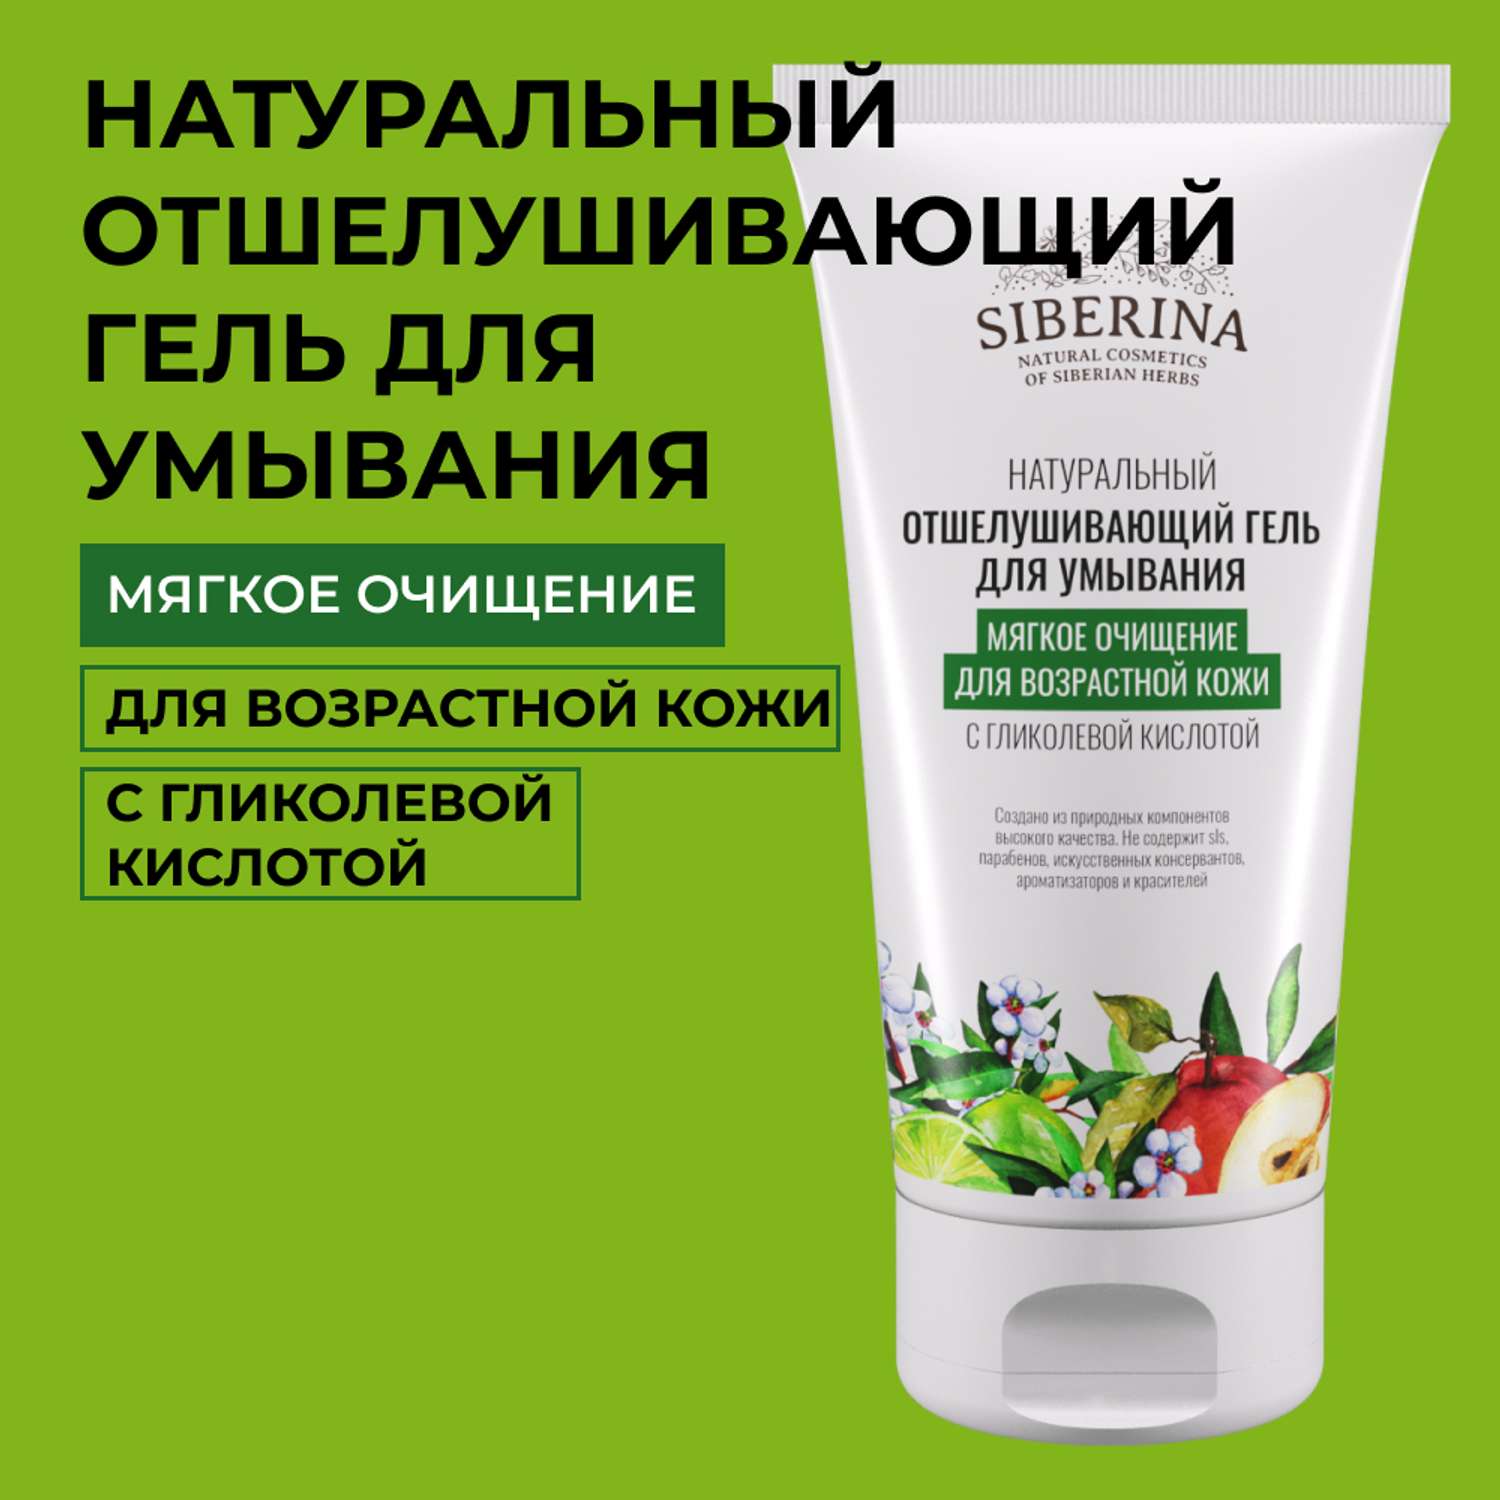 Гель для умывания Siberina натуральный «Мягкое очищение для возрастной кожи» с гликолевой кислотой 150 мл - фото 1